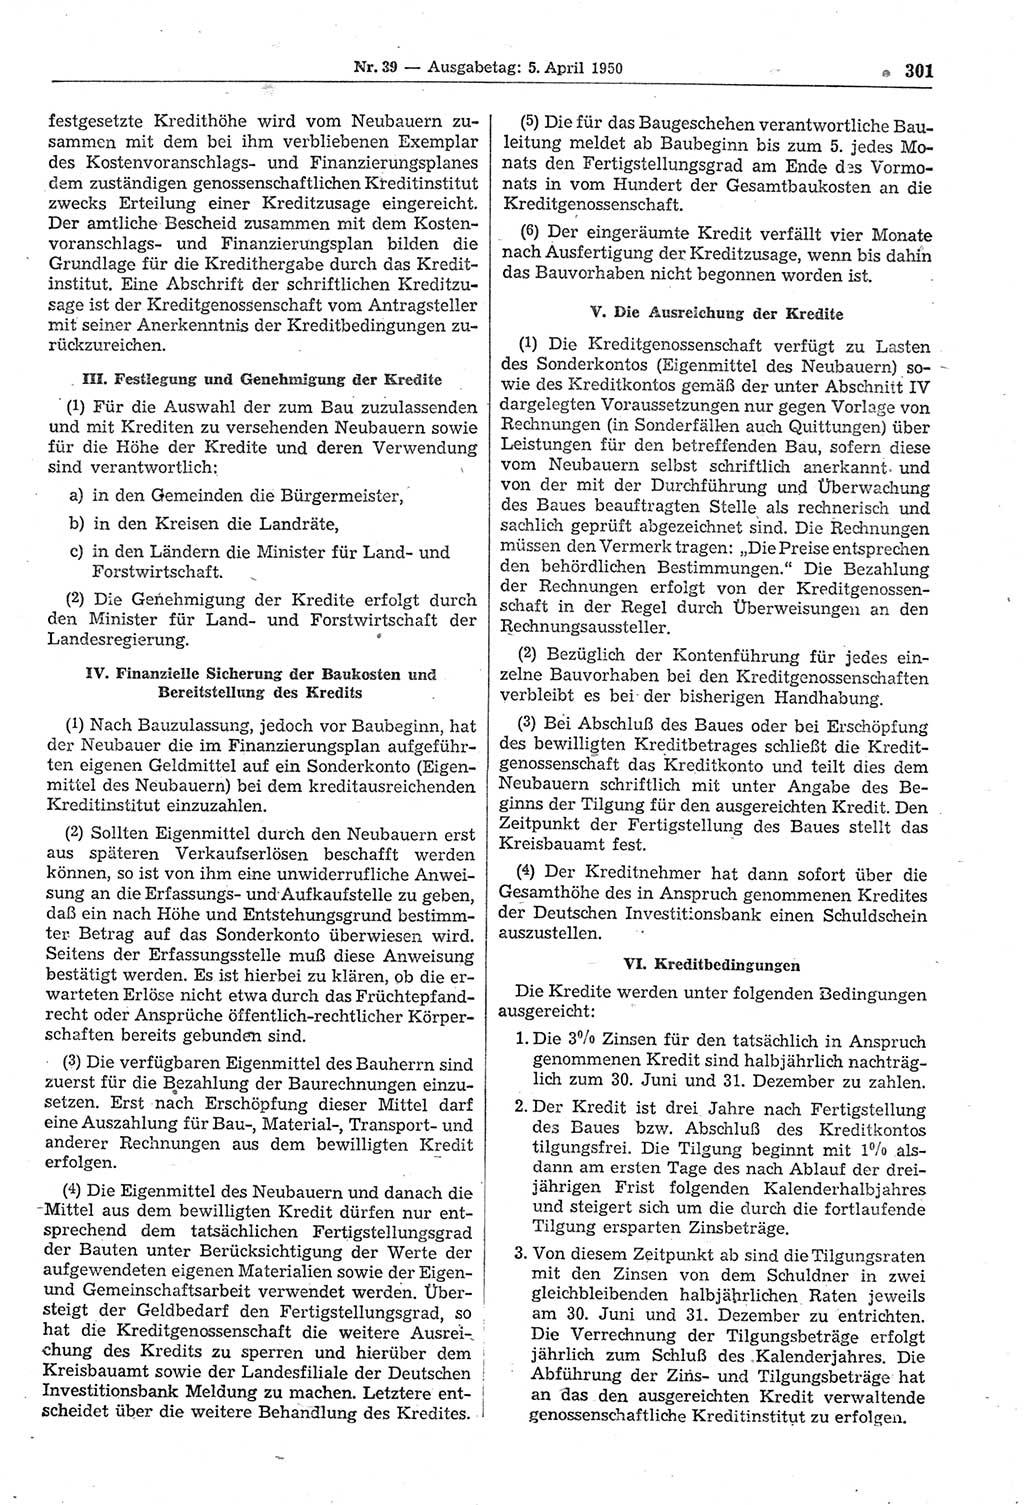 Gesetzblatt (GBl.) der Deutschen Demokratischen Republik (DDR) 1950, Seite 301 (GBl. DDR 1950, S. 301)